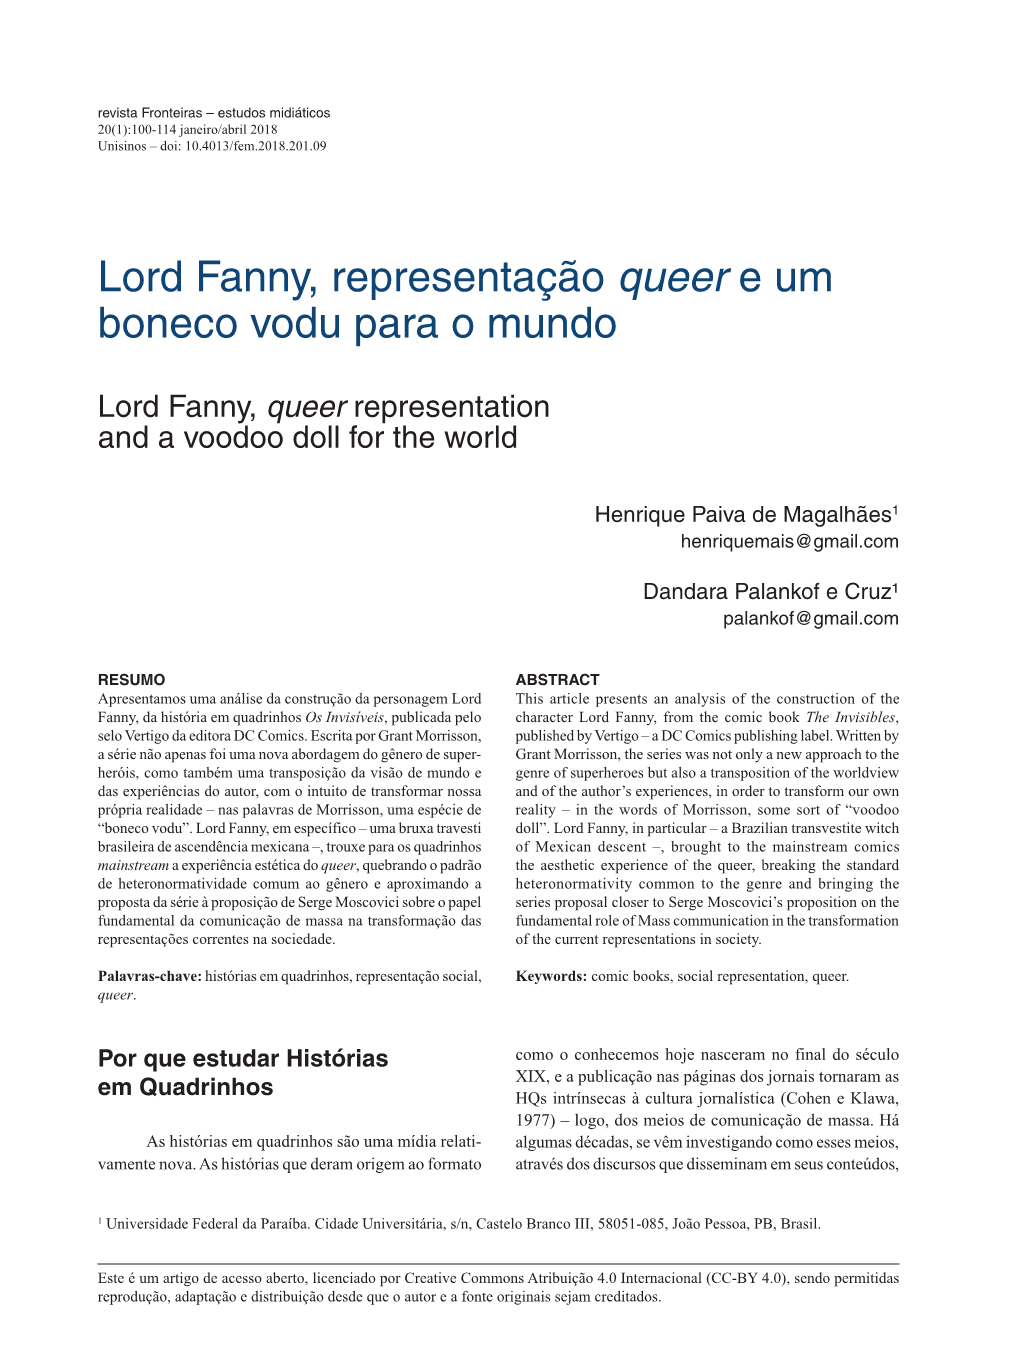 Lord Fanny, Representação Queer E Um Boneco Vodu Para O Mundo